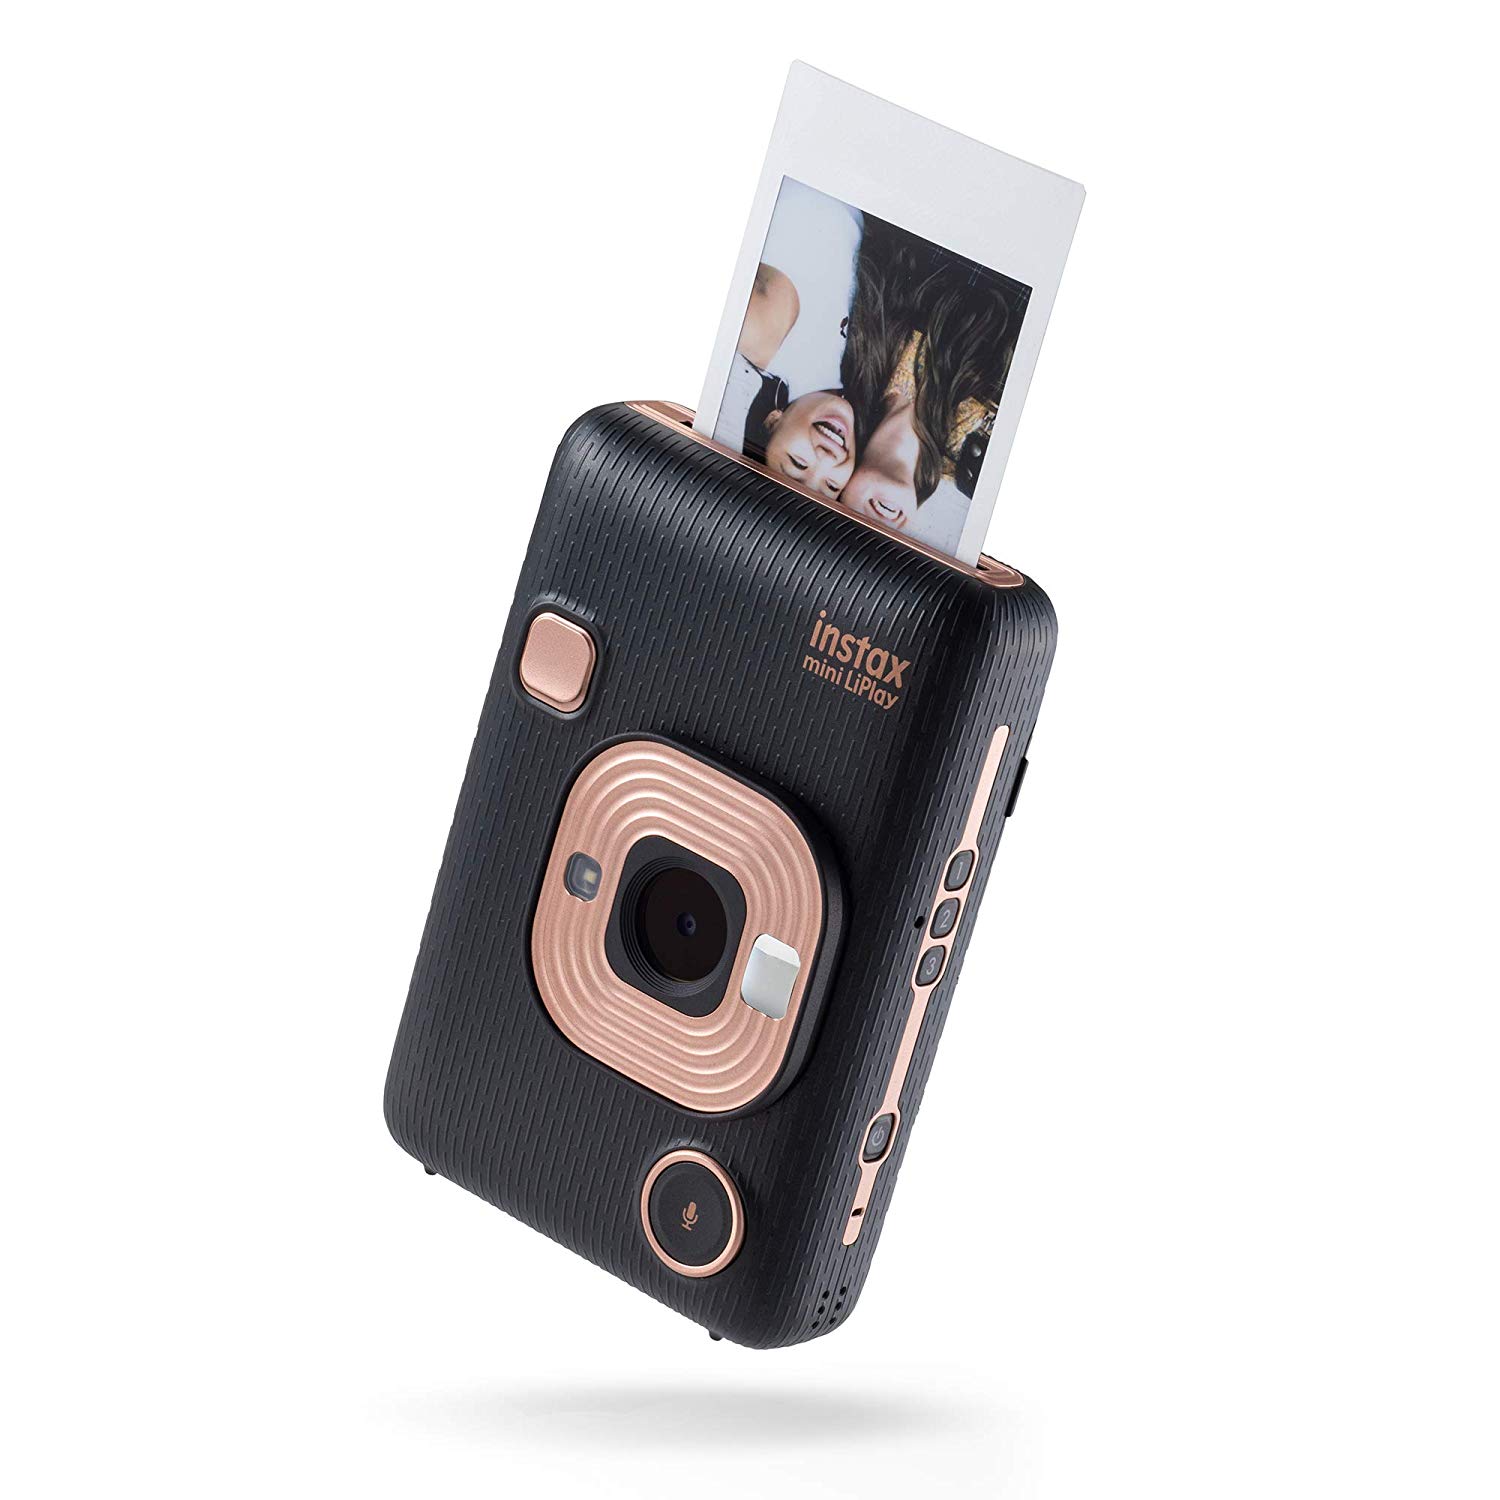 Arriva Polaroid Go: la più piccola macchina fotografica analogica  istantanea al mondo